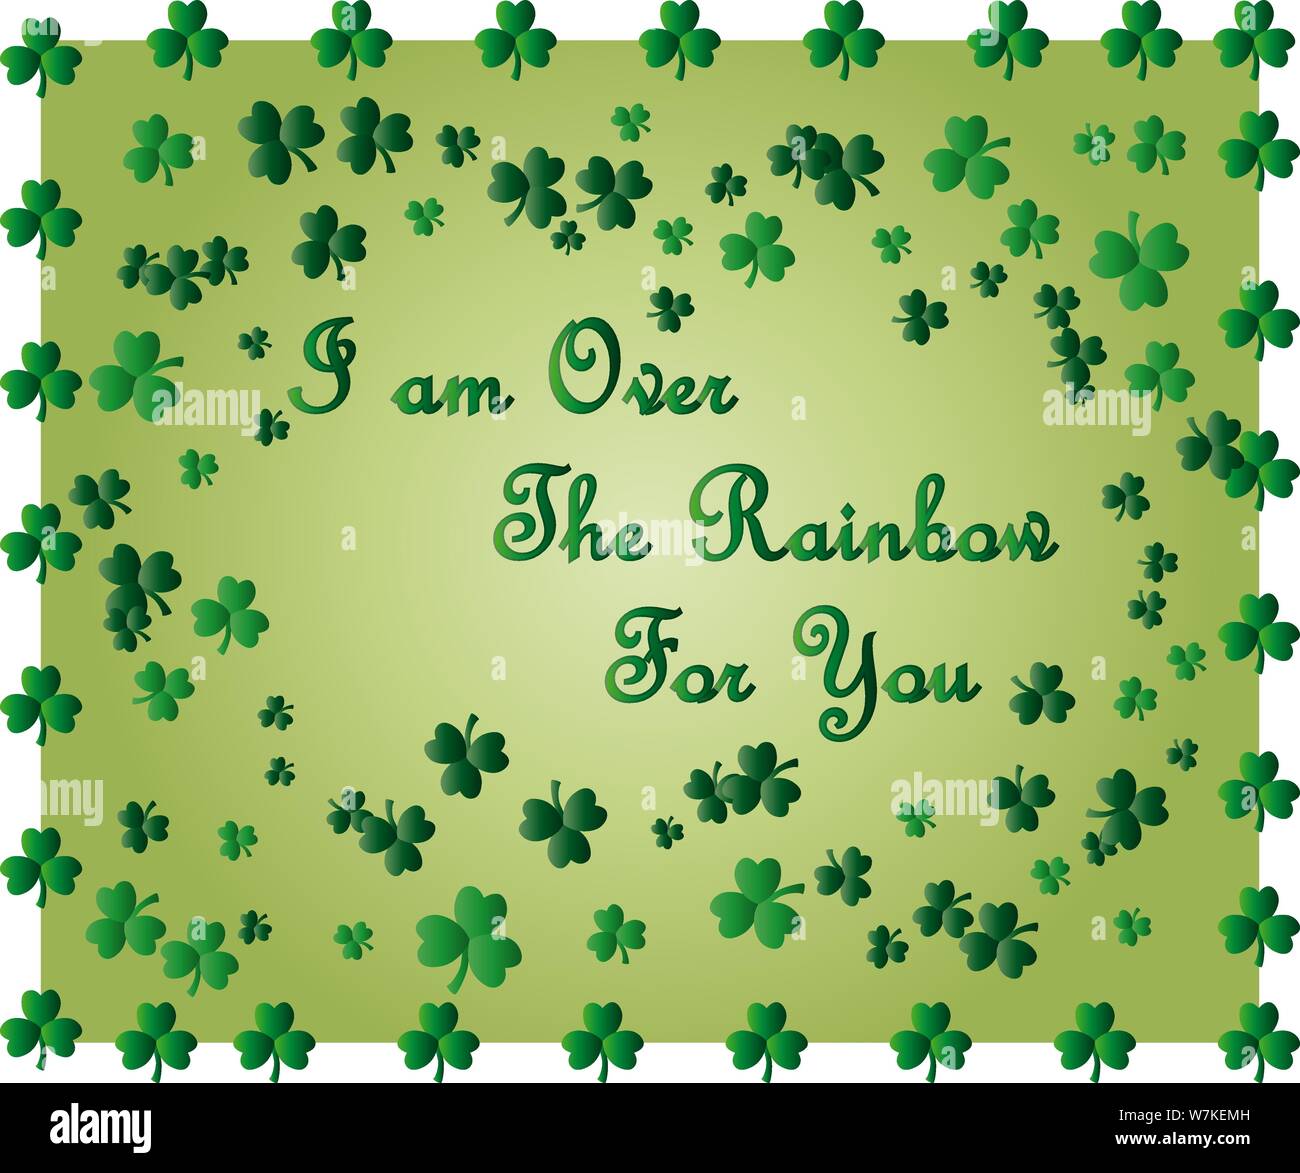 Saint Patrick's Day Greeting card avec les feuilles de trèfle vert étincelaient et texte. Inscription - J'ai plus l'Arc en Ciel pour vous Illustration de Vecteur